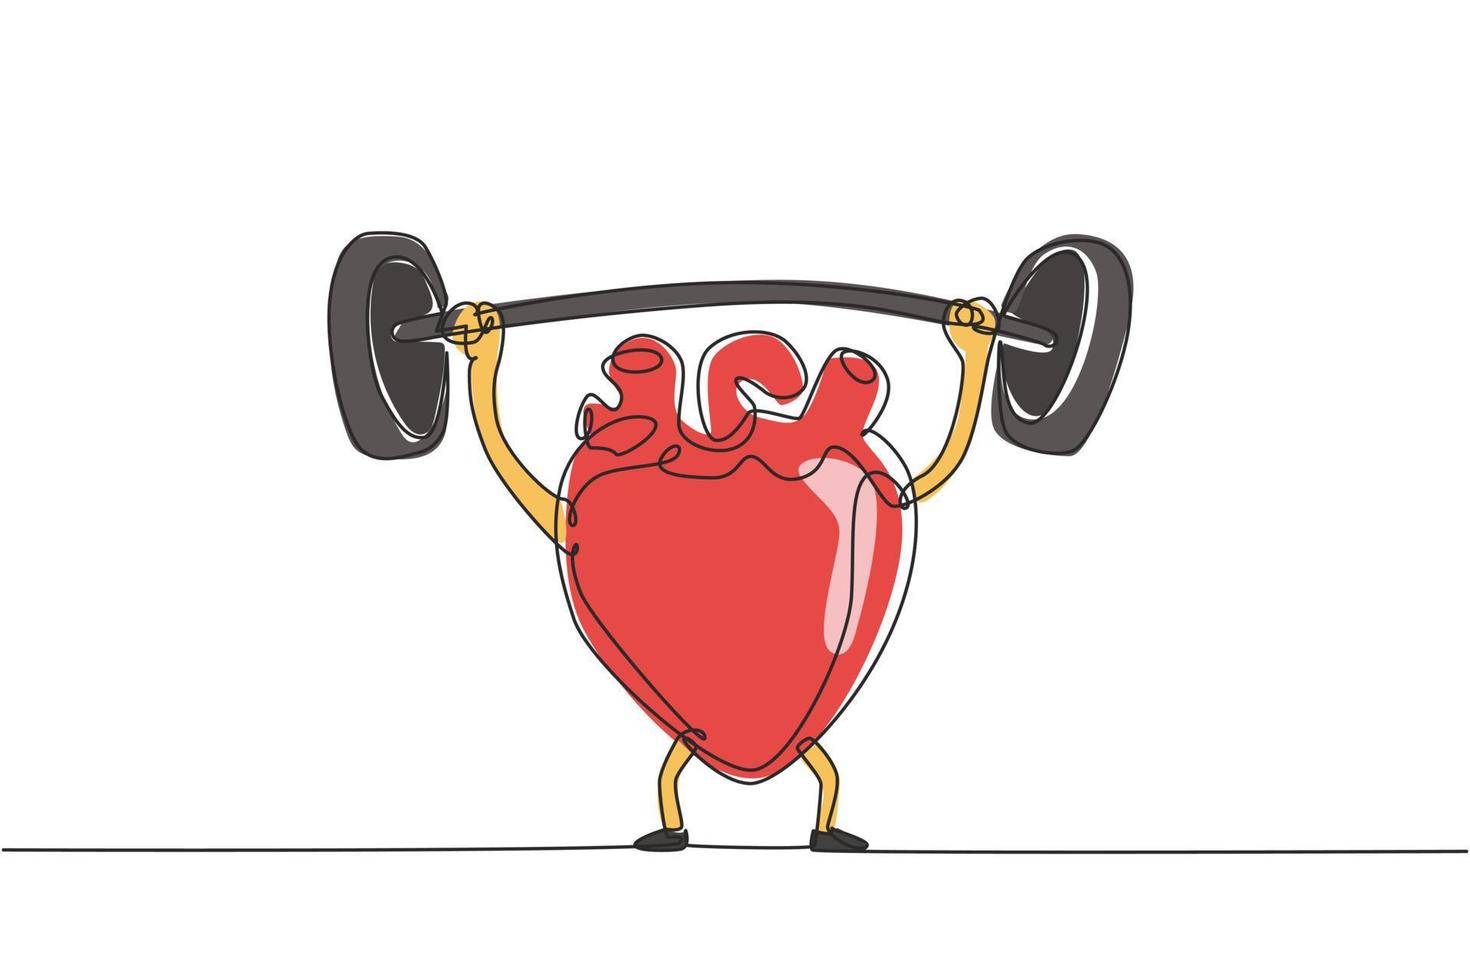 kontinuerlig en rad ritning sport fitness design koncept av mänskligt hjärta organ gör övningar med skivstång. friskt hjärta visar styrka genom att lyfta tung skivstång. enda rad rita design vektor